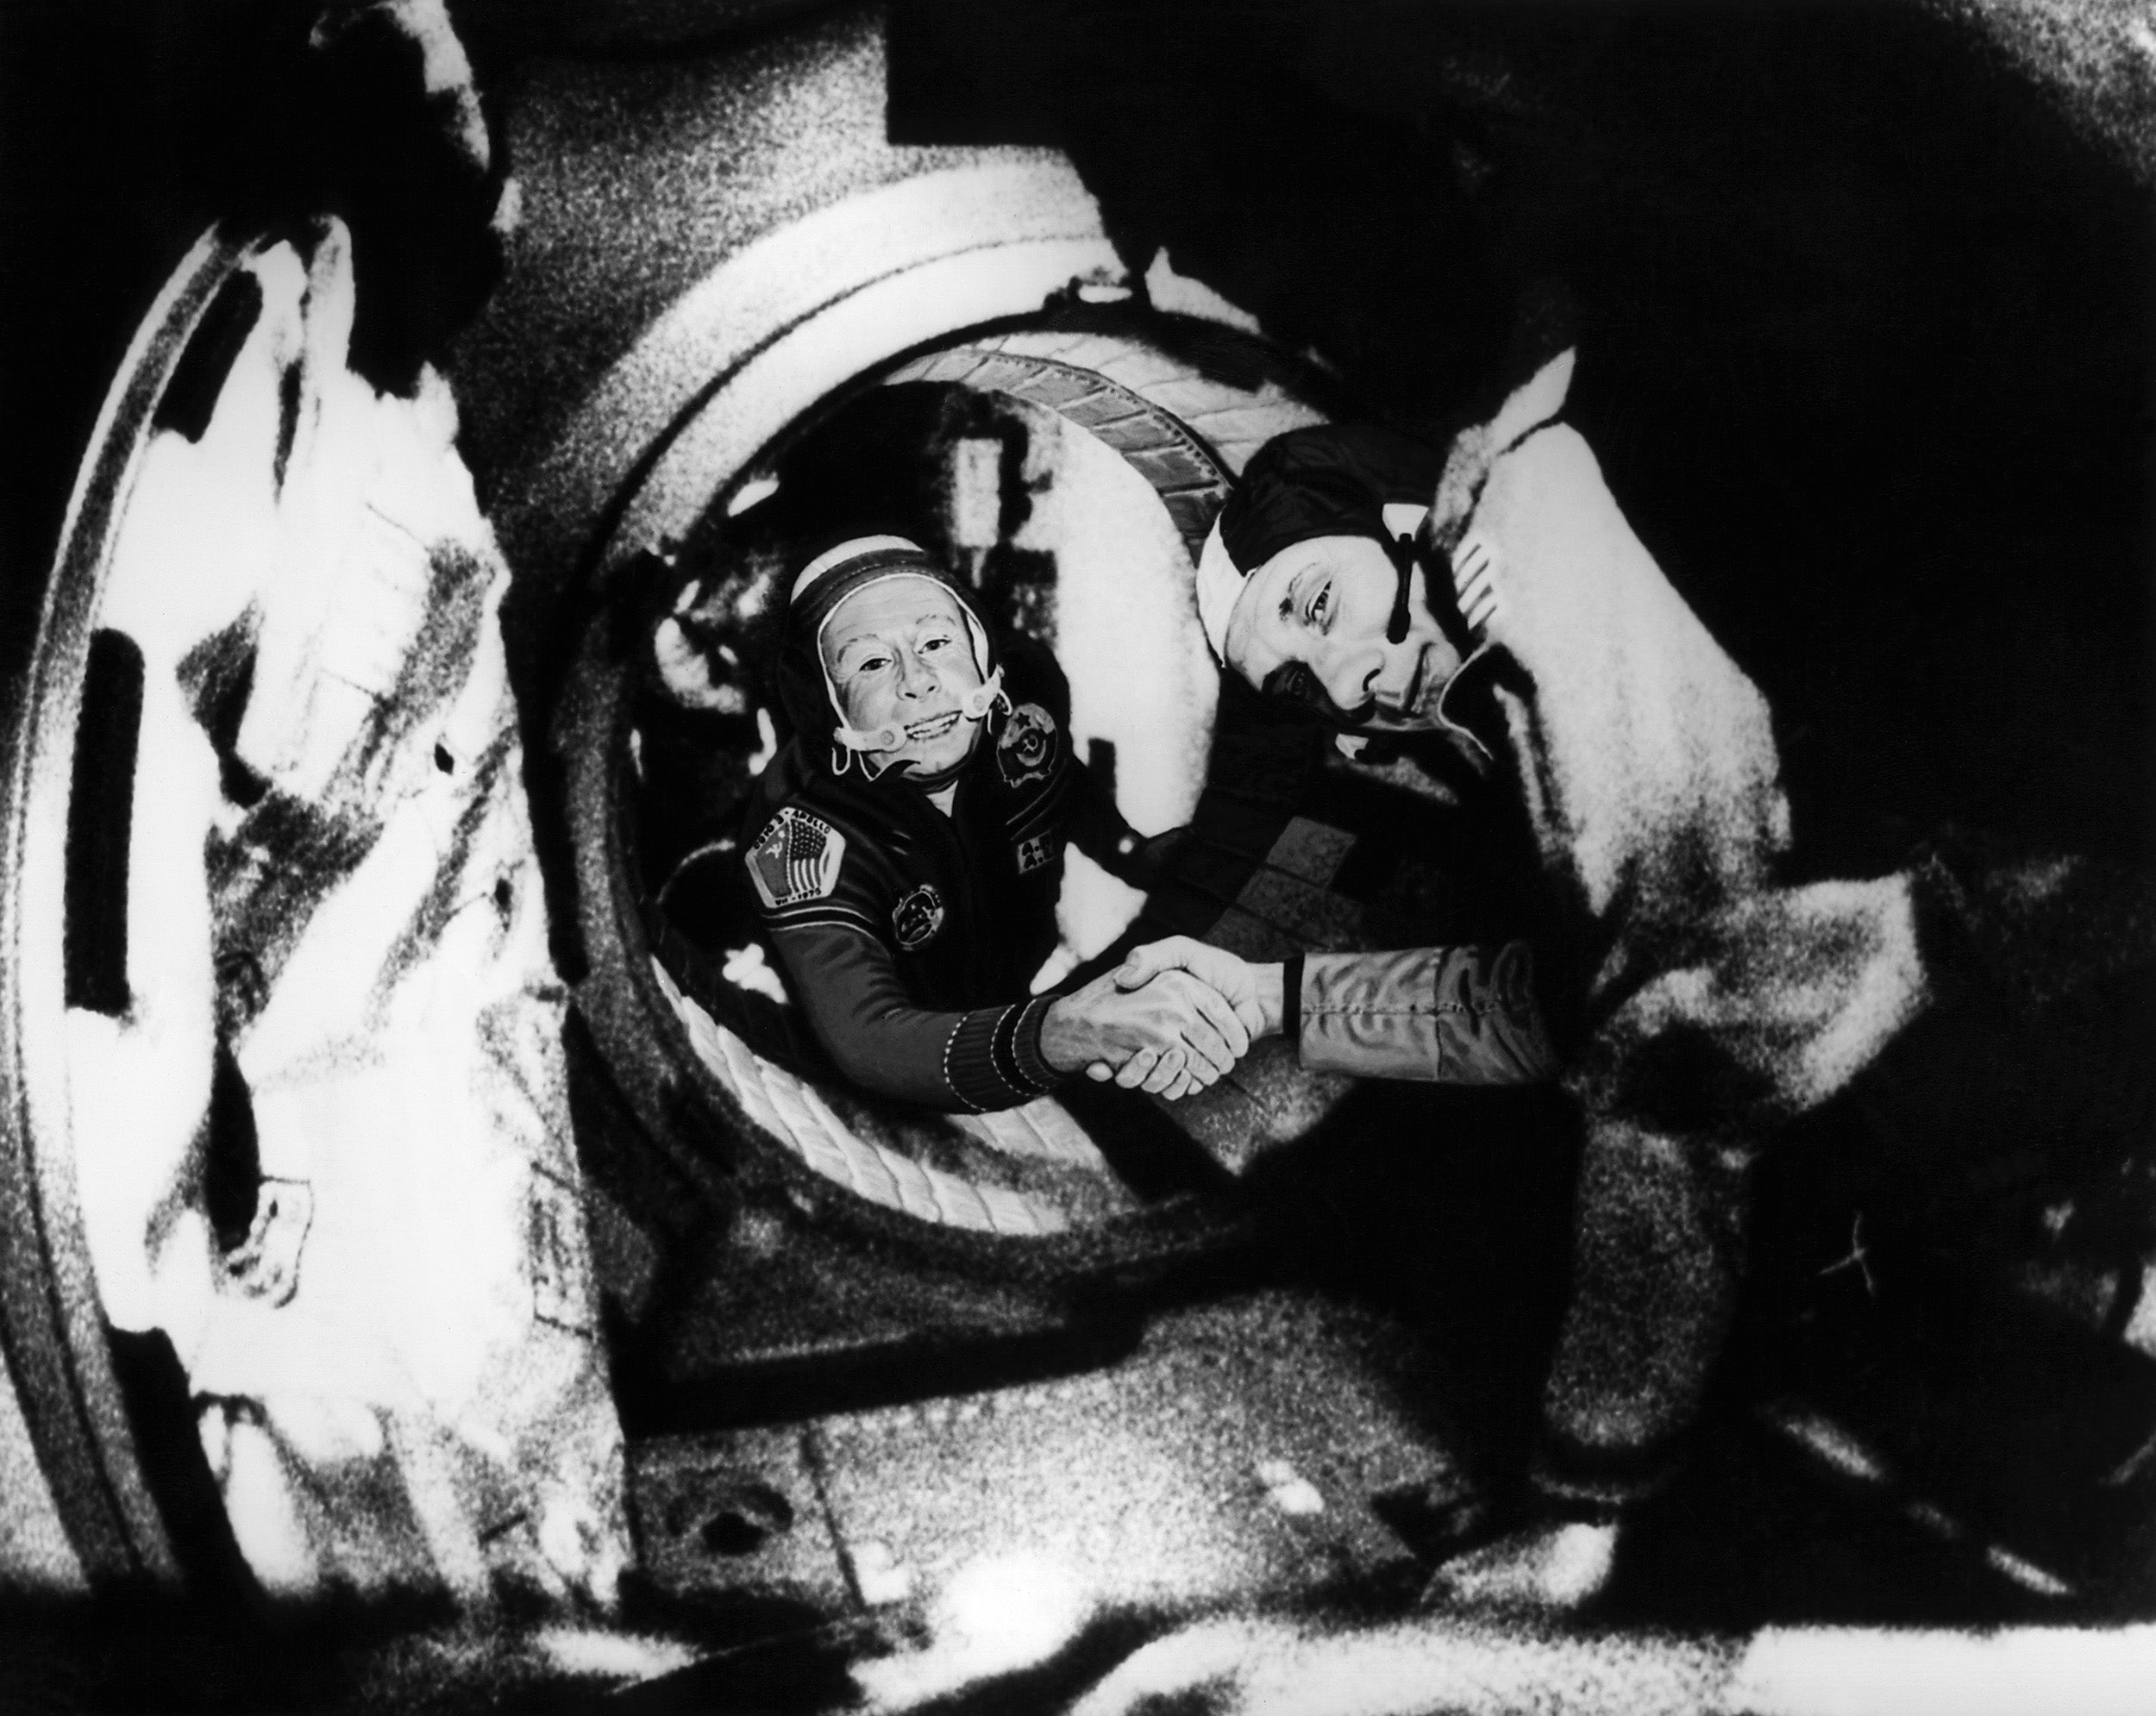 En 1975, la nave espacial estadounidense Apolo y el Soyuz ruso se encontraron en el espacio